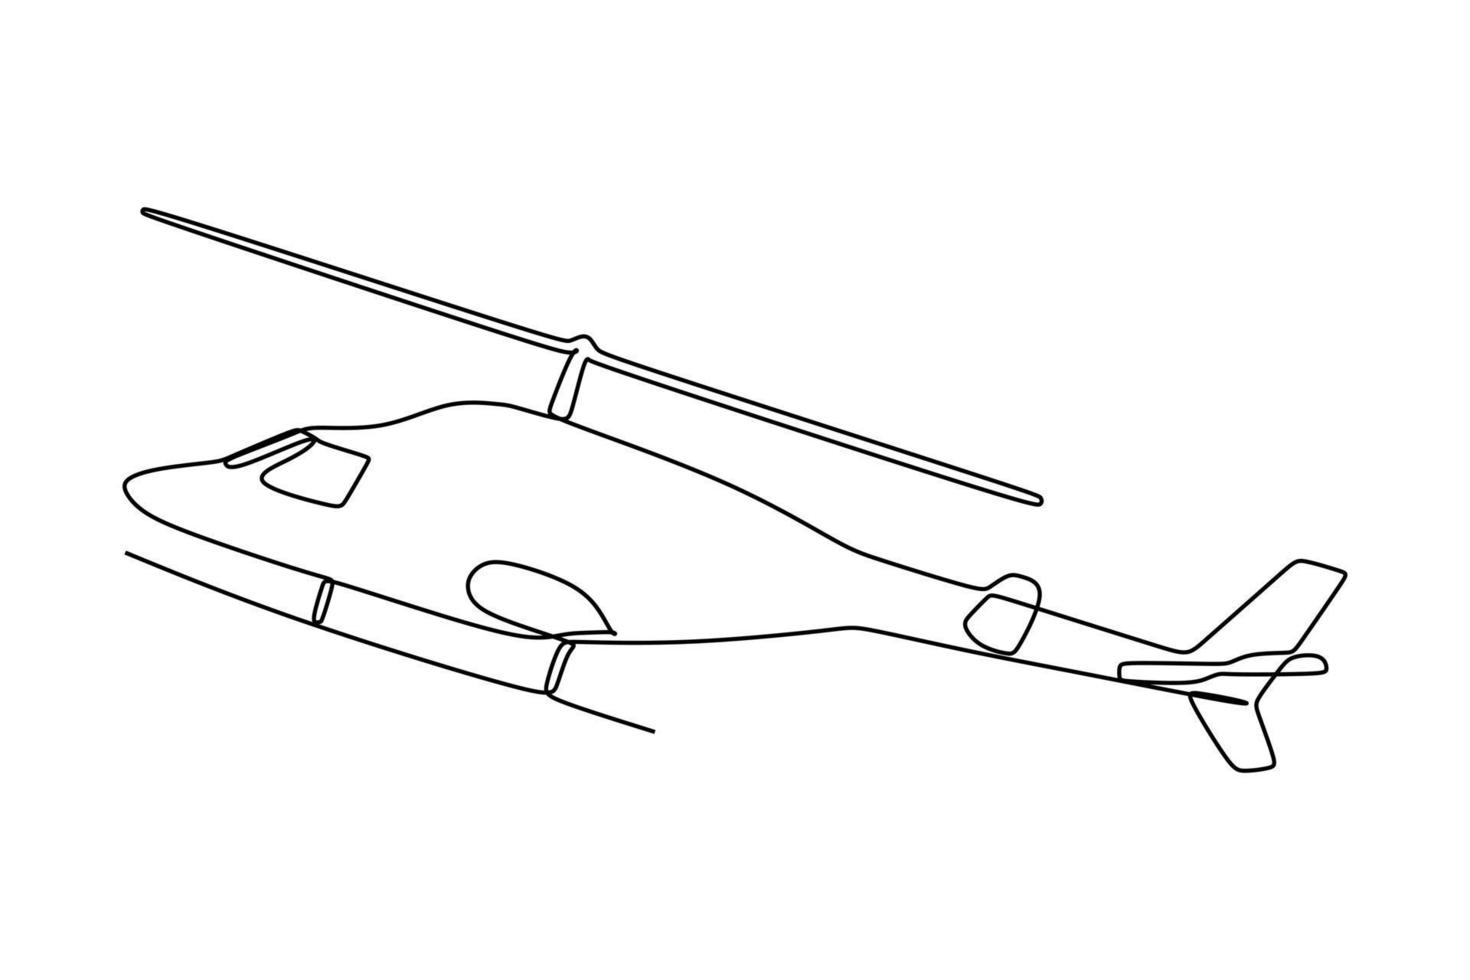 einzelne fortlaufende Linienzeichnung eines fliegenden Hubschraubers. handzeichnungsstil für transportkonzept vektor